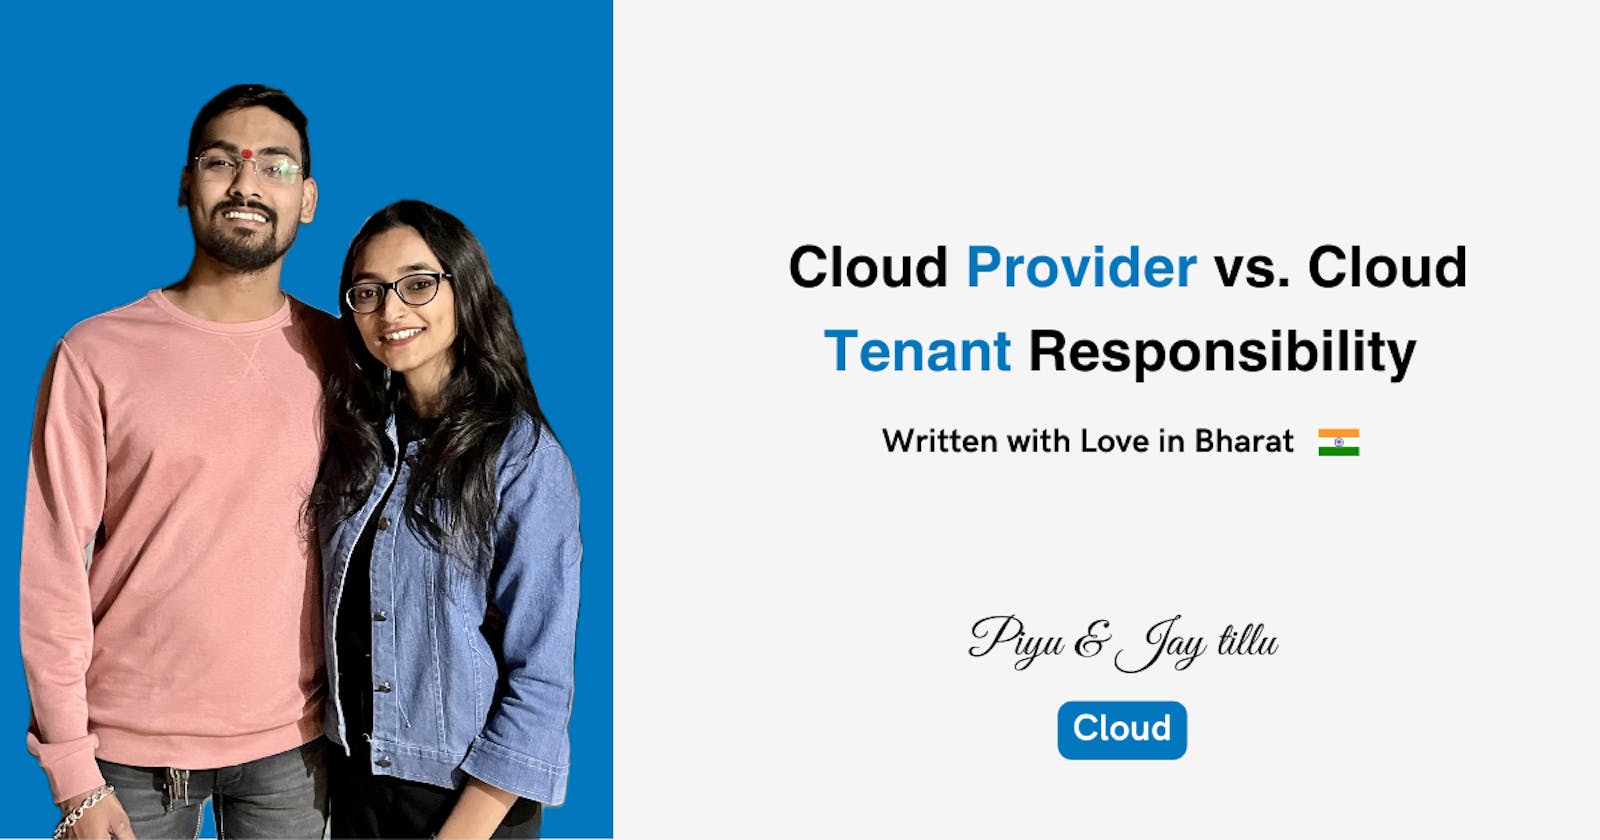 Cloud Provider vs Cloud Tenant responsibilities in IaaS, PaaS, and SaaS